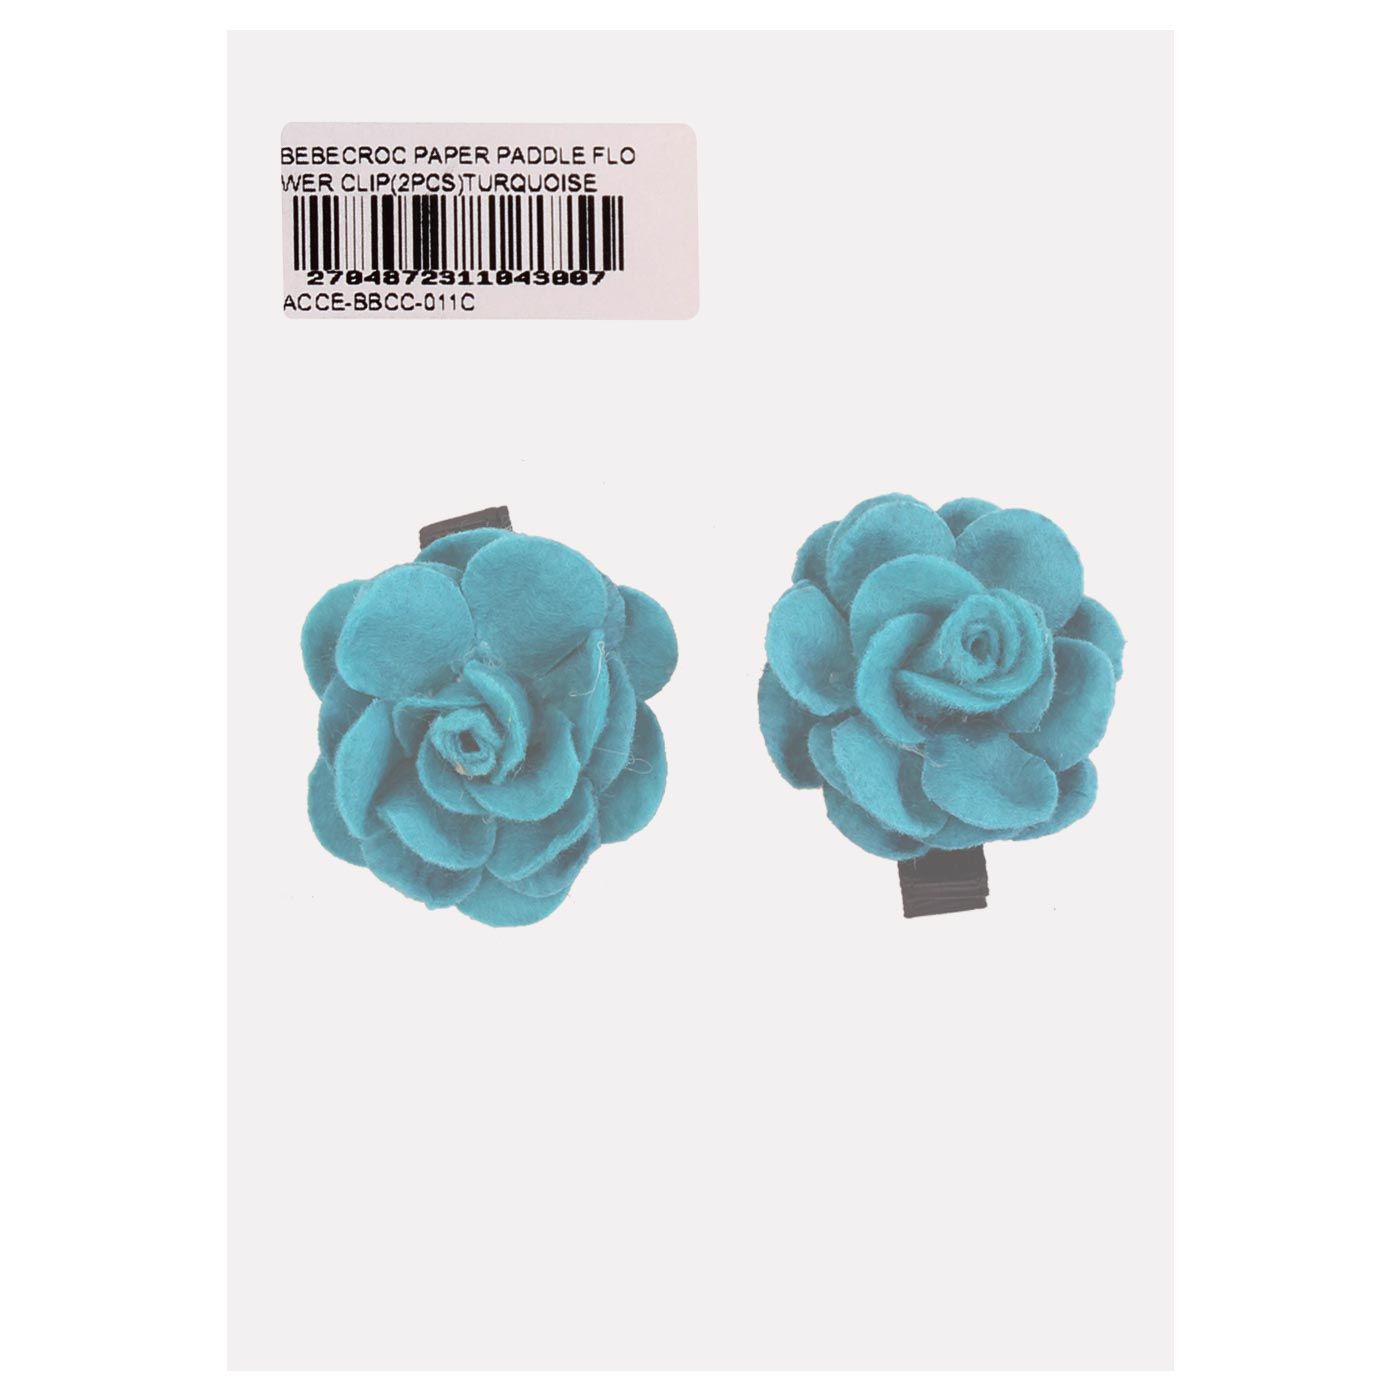 Bebecroc Paper Paddle Flower Clip(2pcs)Turquoise - 1